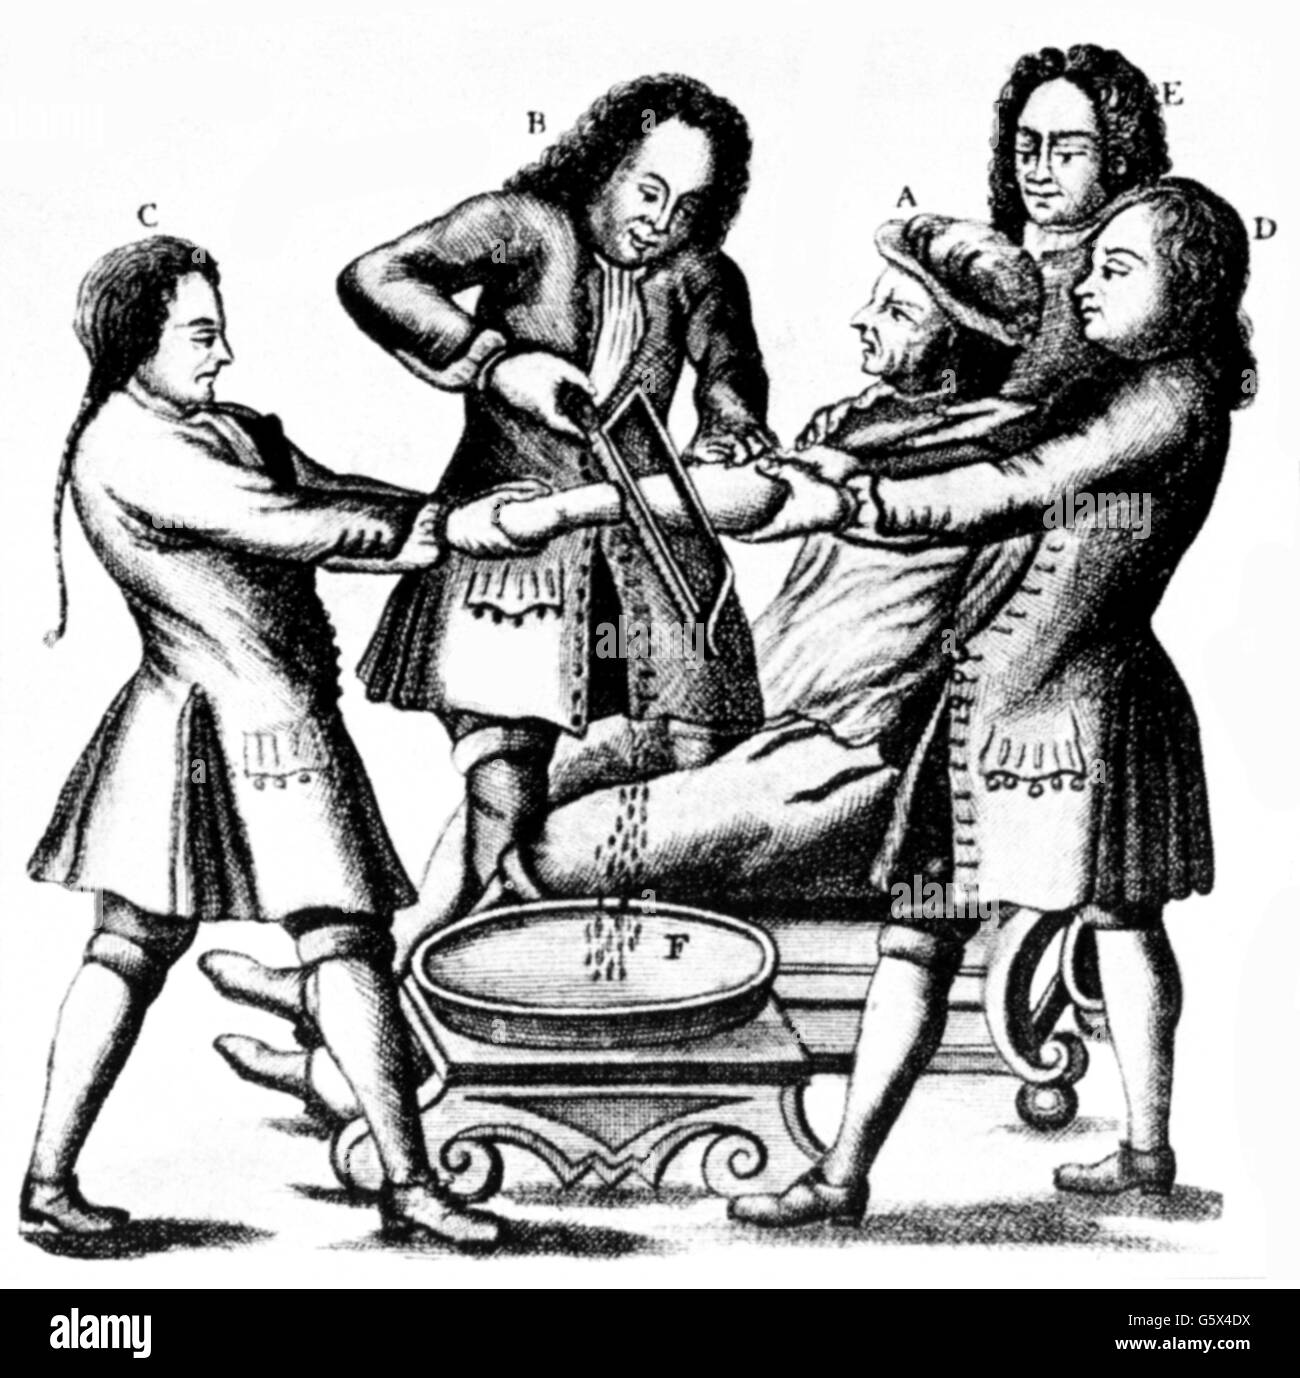 Medicina e Chirurgia, amputazione, amputazione del braccio con una sega d'osso, incisione su rame, fuori: Lorenz Heister (1683 - 1758), "Chirurgie', Norimberga, 1719, artista del diritto d'autore non deve essere cancellata Foto Stock